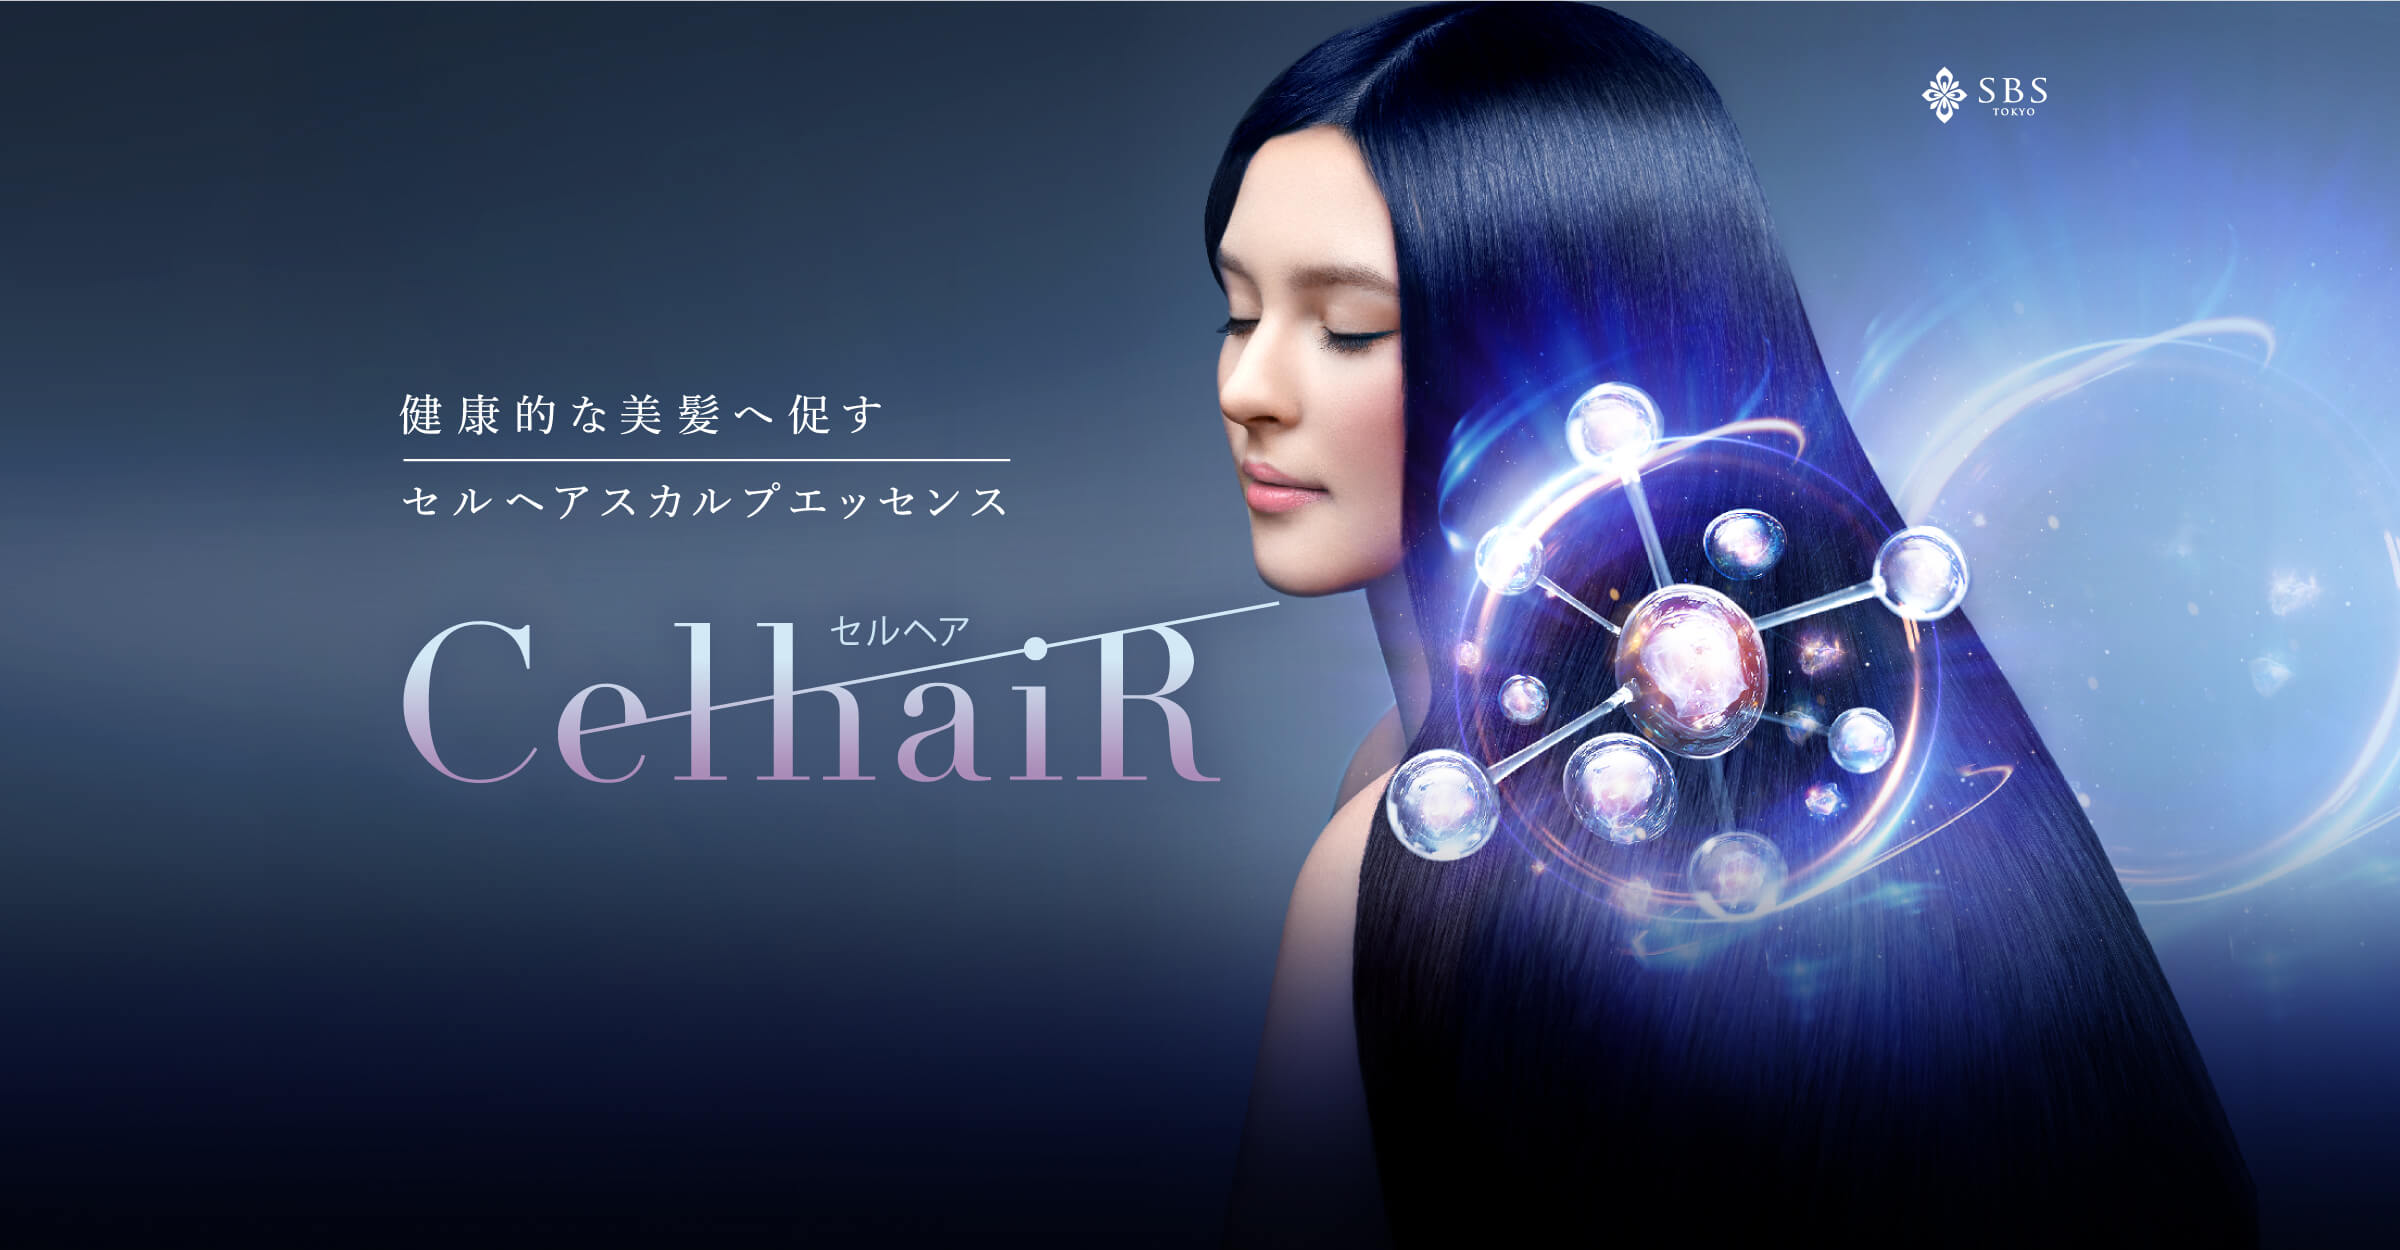 健康的な美髪へ促す セルヘアスカルプエッセンス CelhaiR(セルヘア)